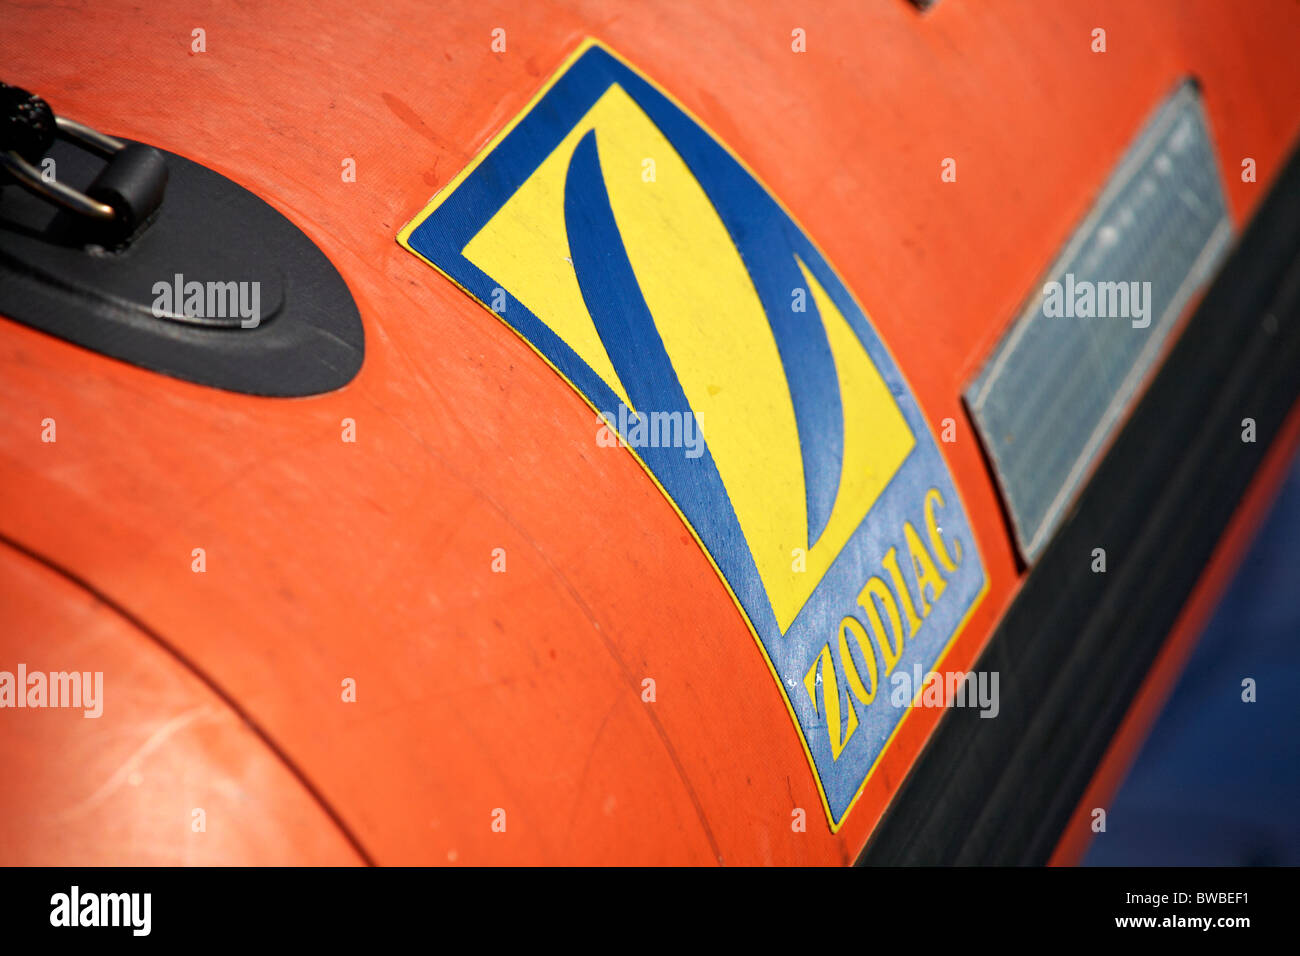 Chiusura del simbolo dello Zodiaco su orange life saving dinghy a bordo di traghetti Foto Stock